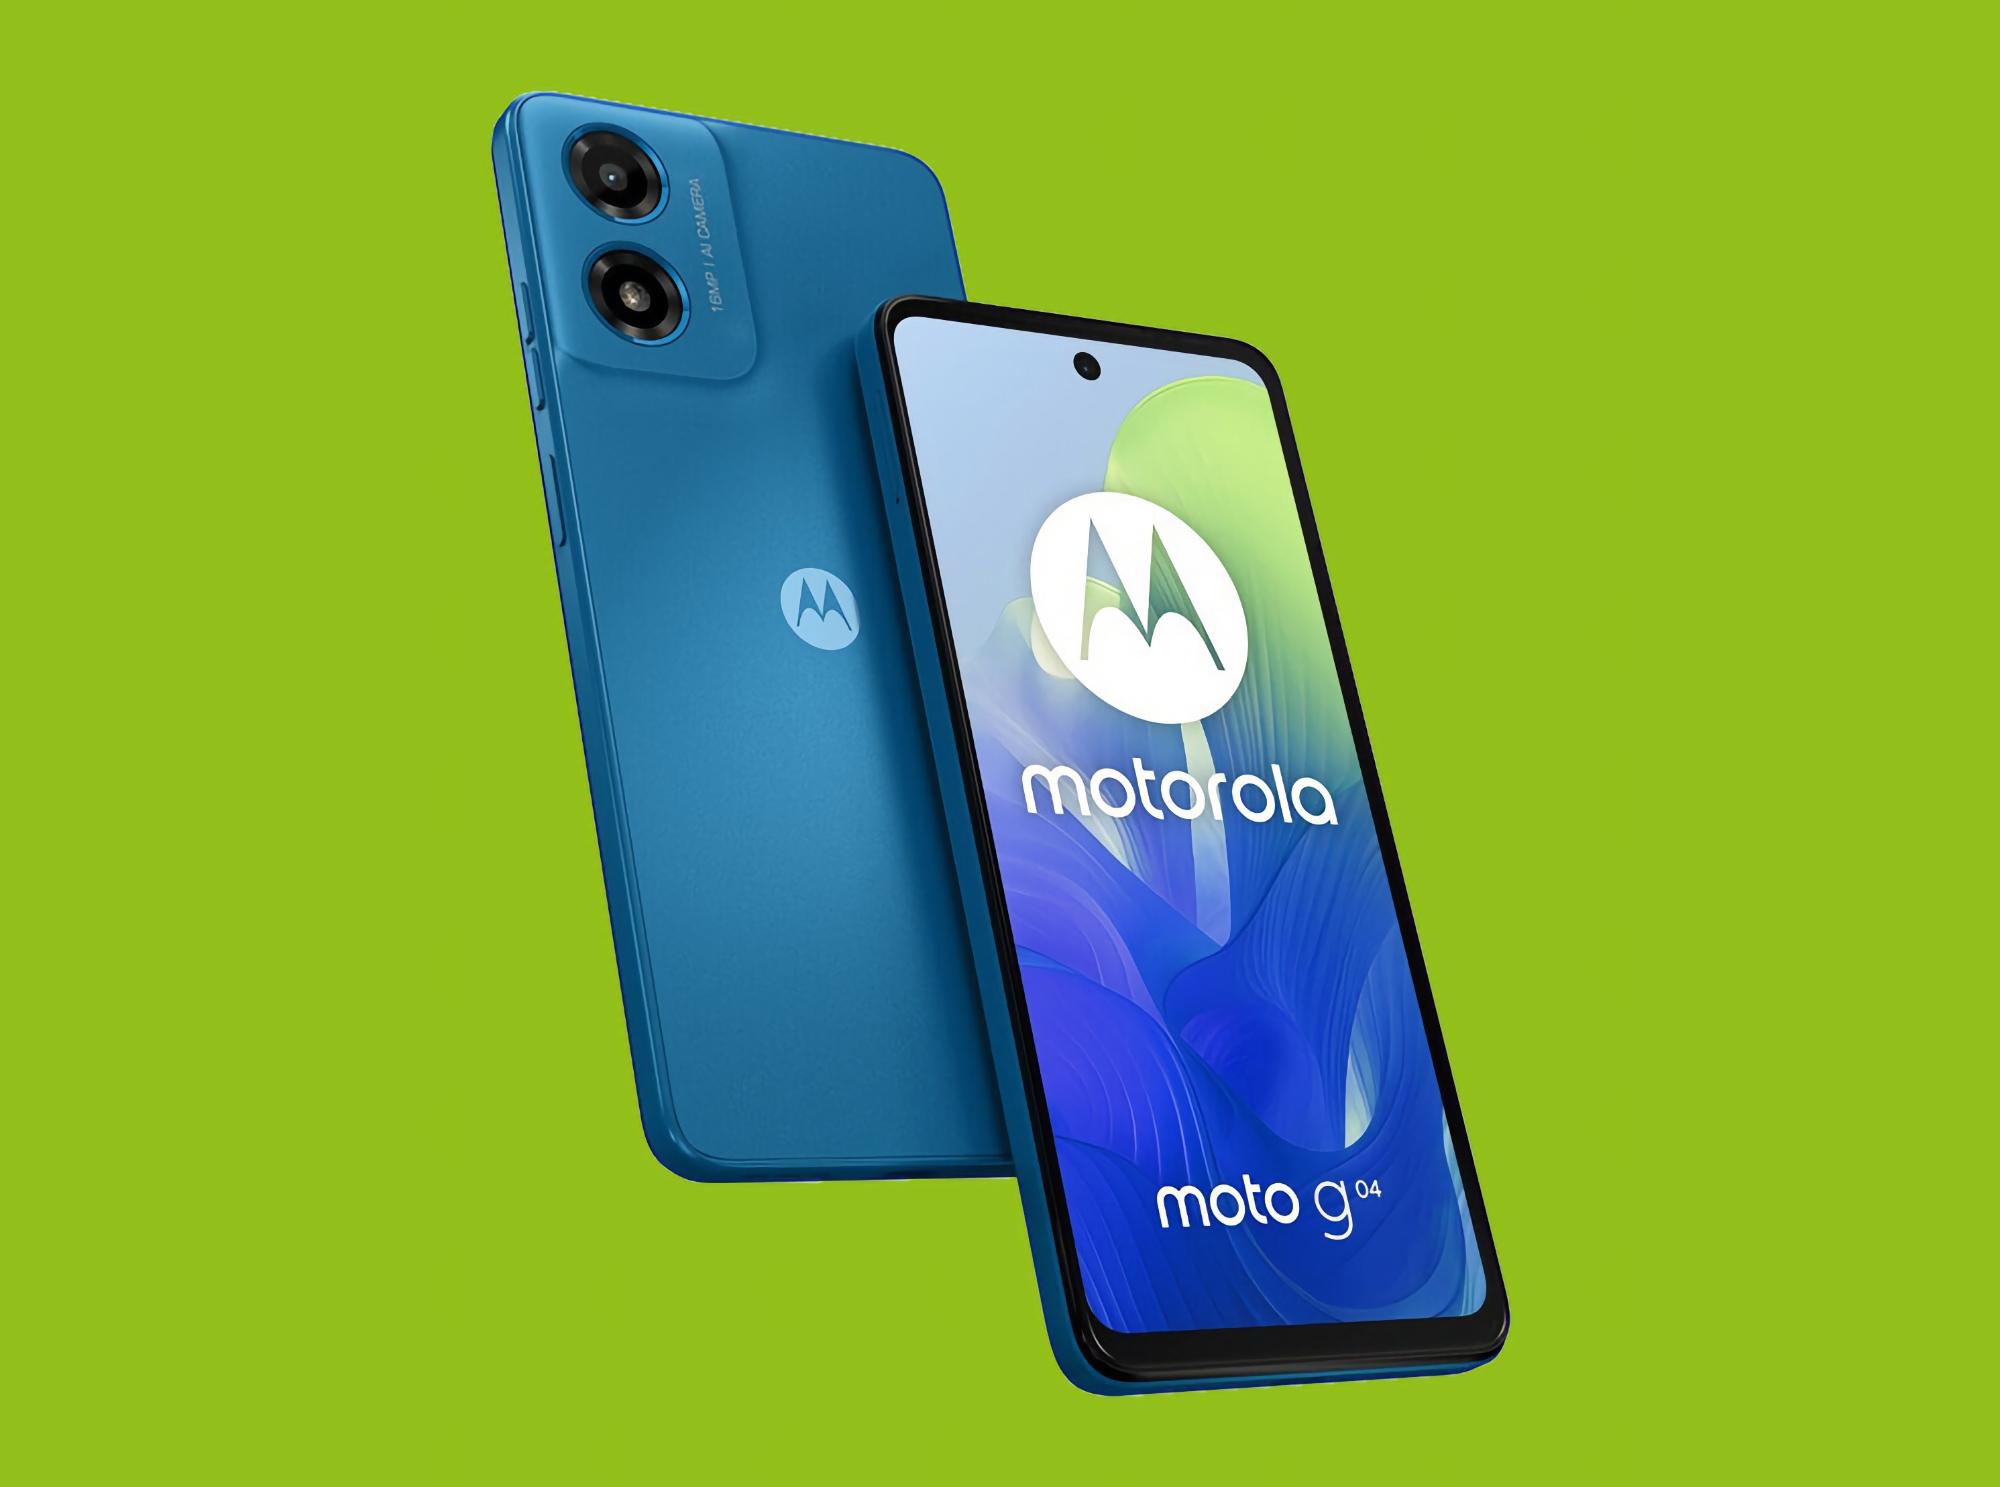 Moto G04: smartphone economico con chip Unisoc e batteria da 5000 mAh a 119 euro